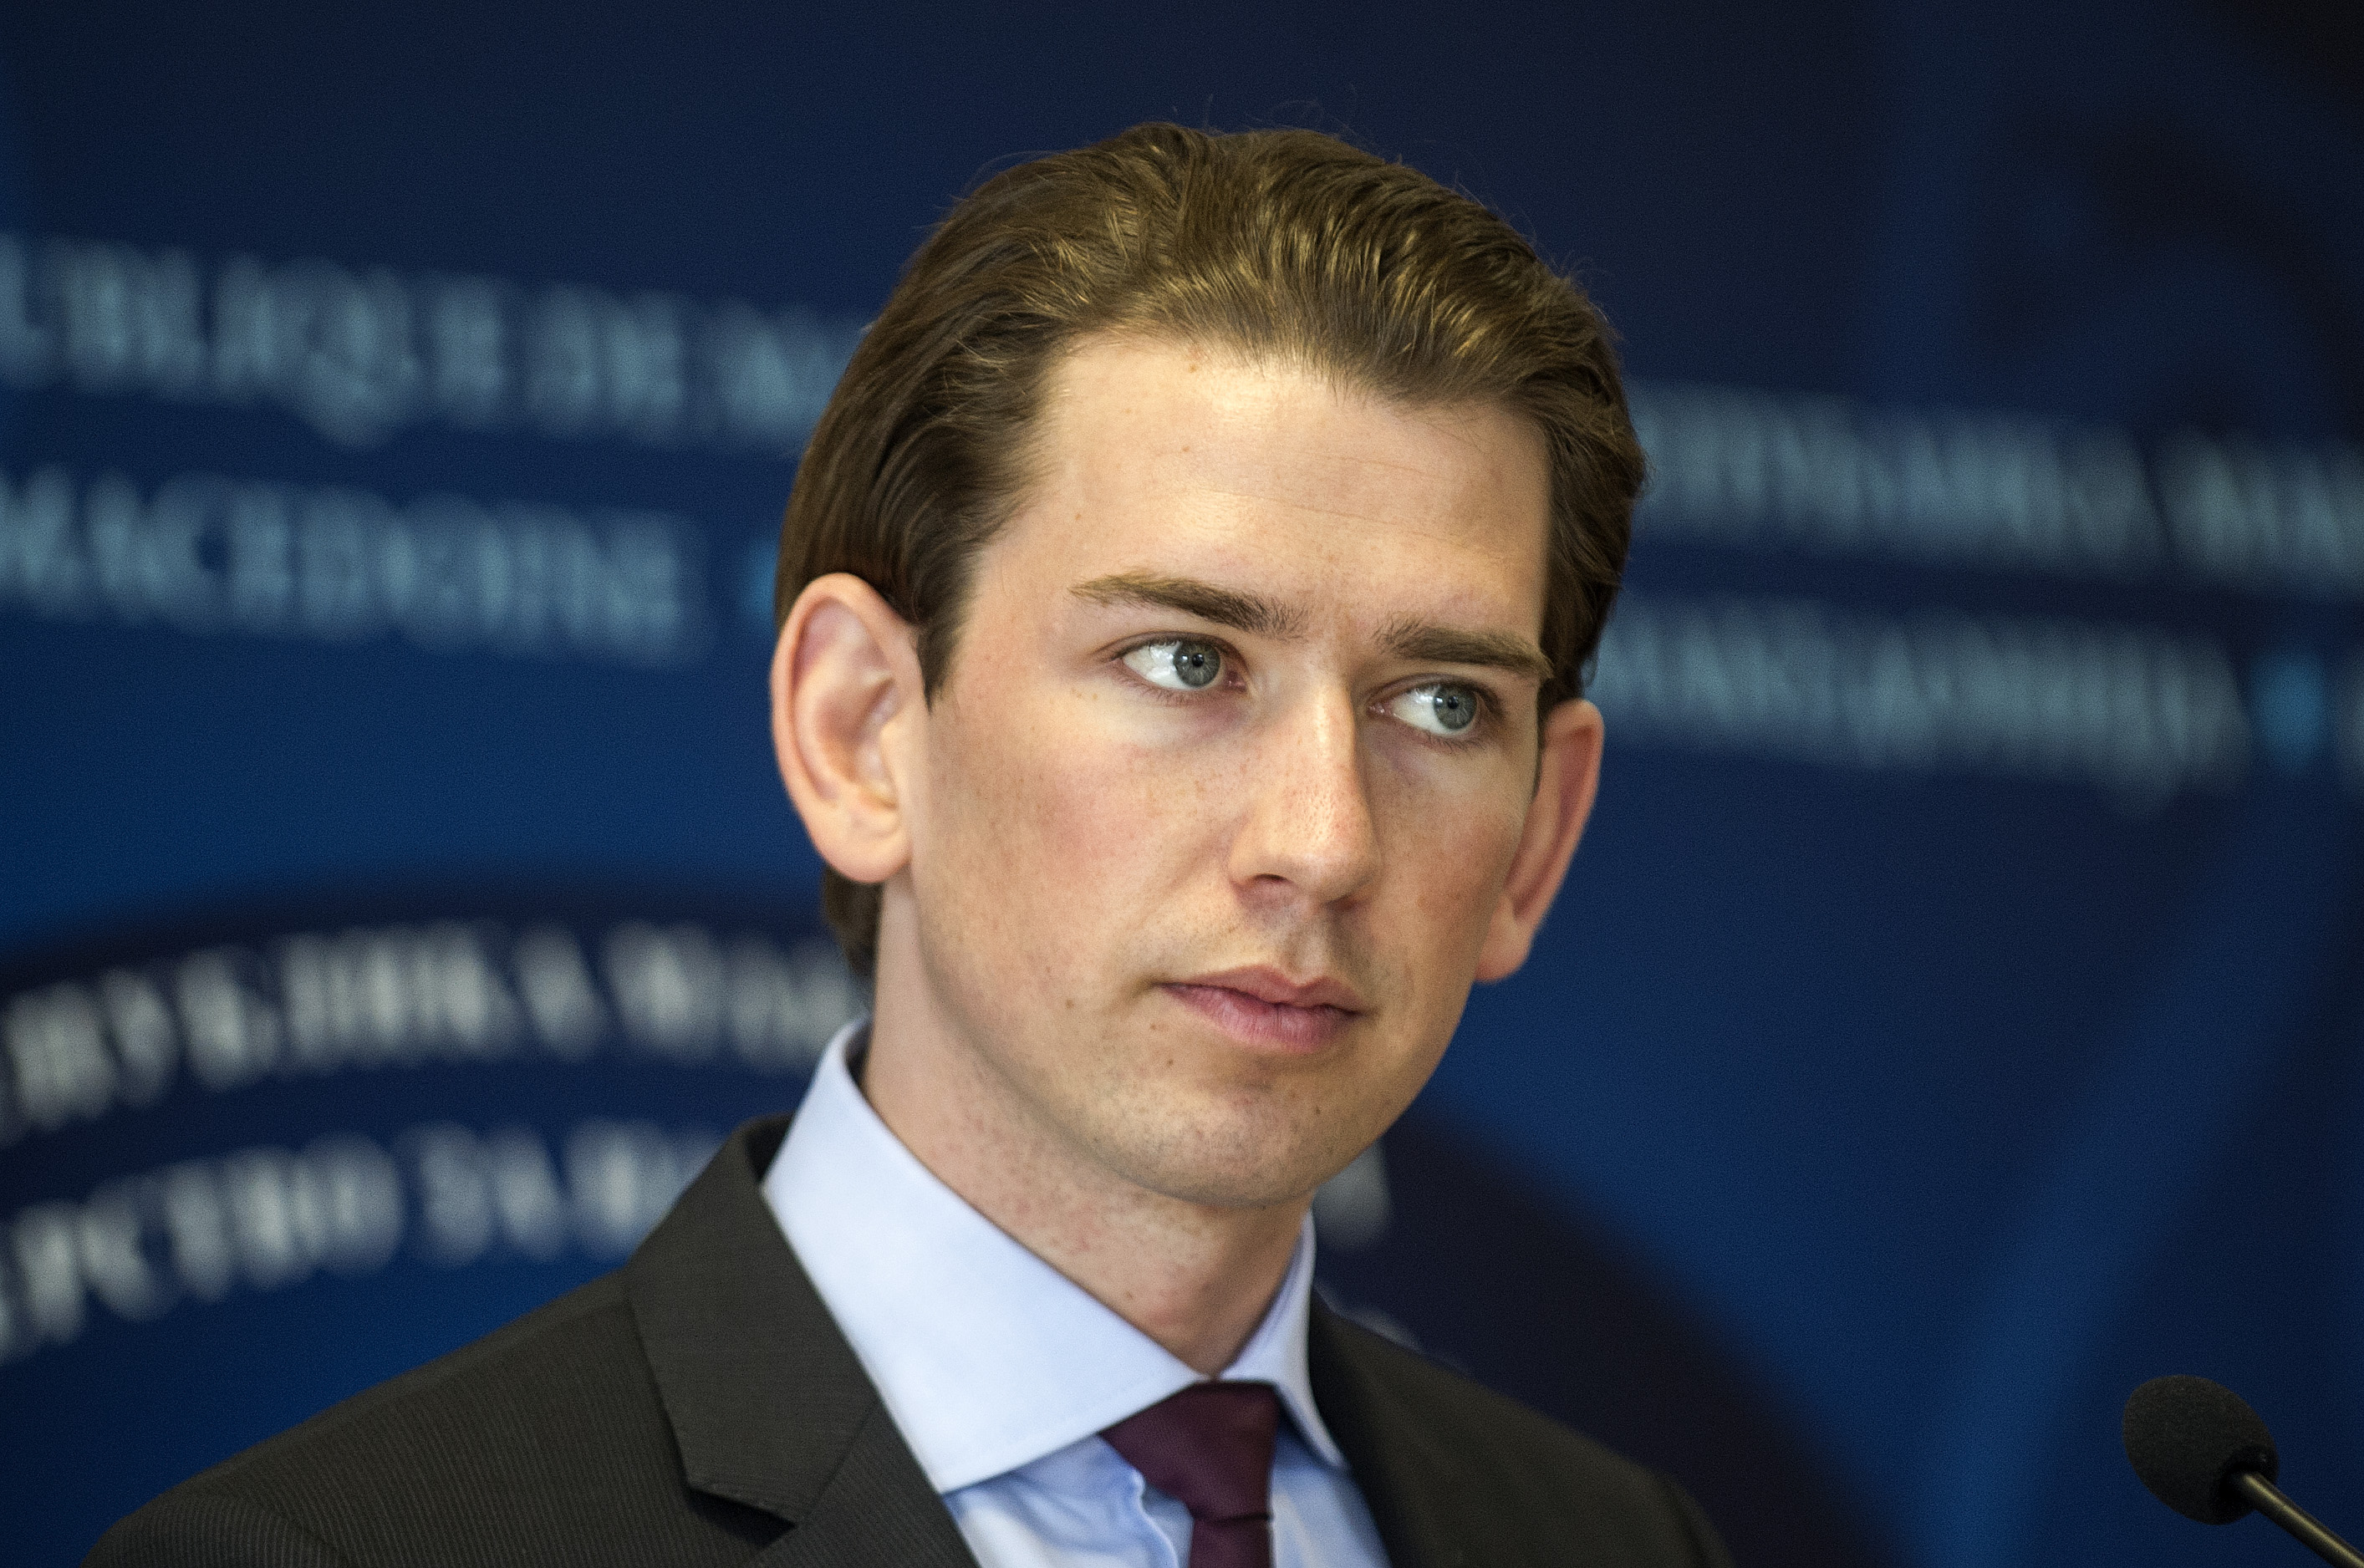 Österreich: „Politiker, die durchwinken“ verbreiten falsche Hoffnungen